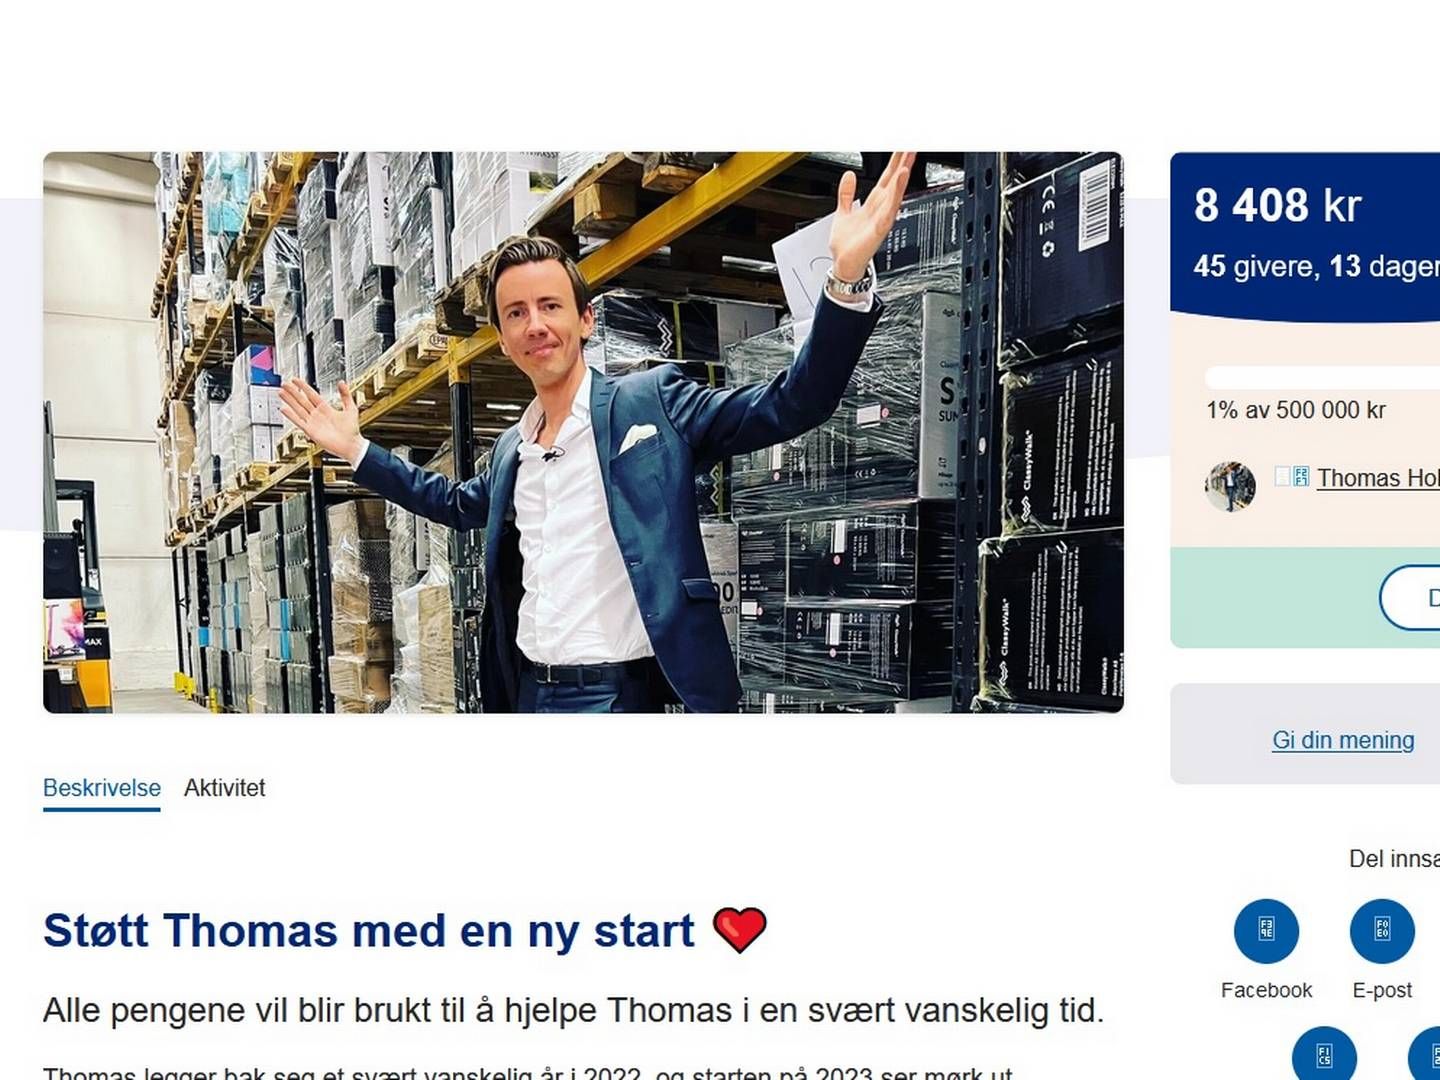 Stayclassy-gründer, Thomas Holstad, ville samle inn penger til seg selv. | Foto: Spleis.no